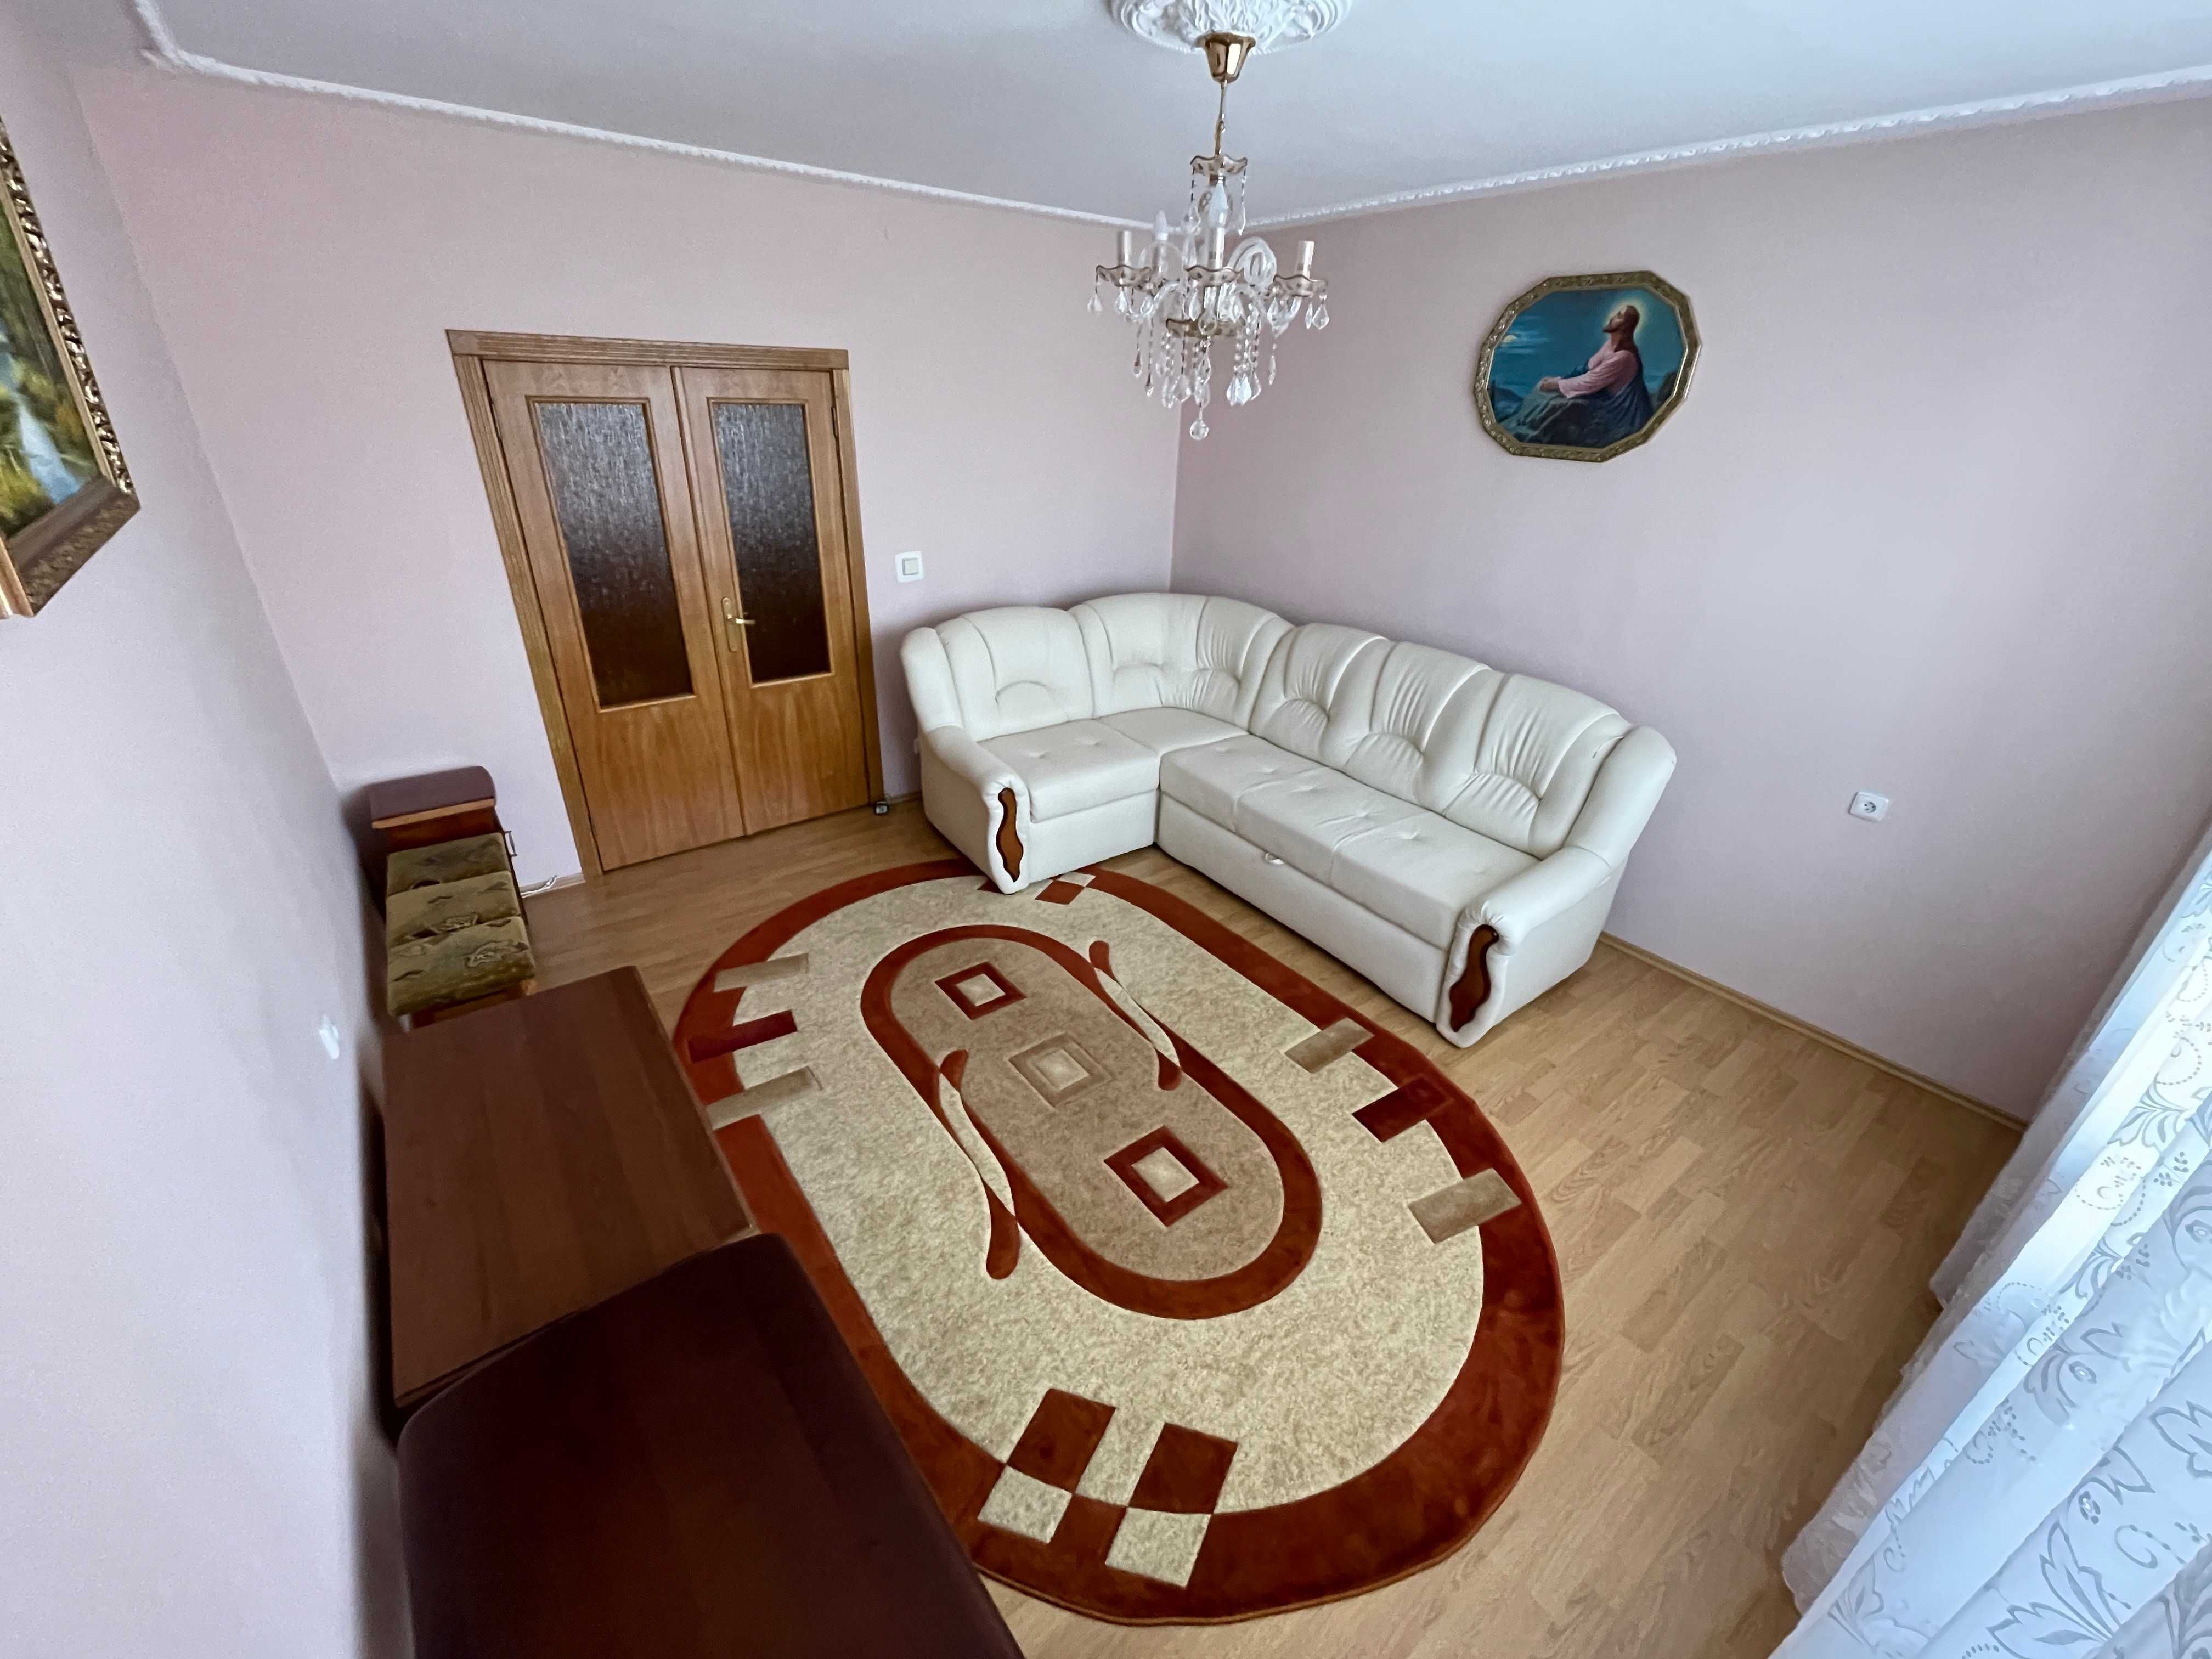 Продам 3 кімнатну квартиру 62 кв.м. м. Новояворівськ!!!